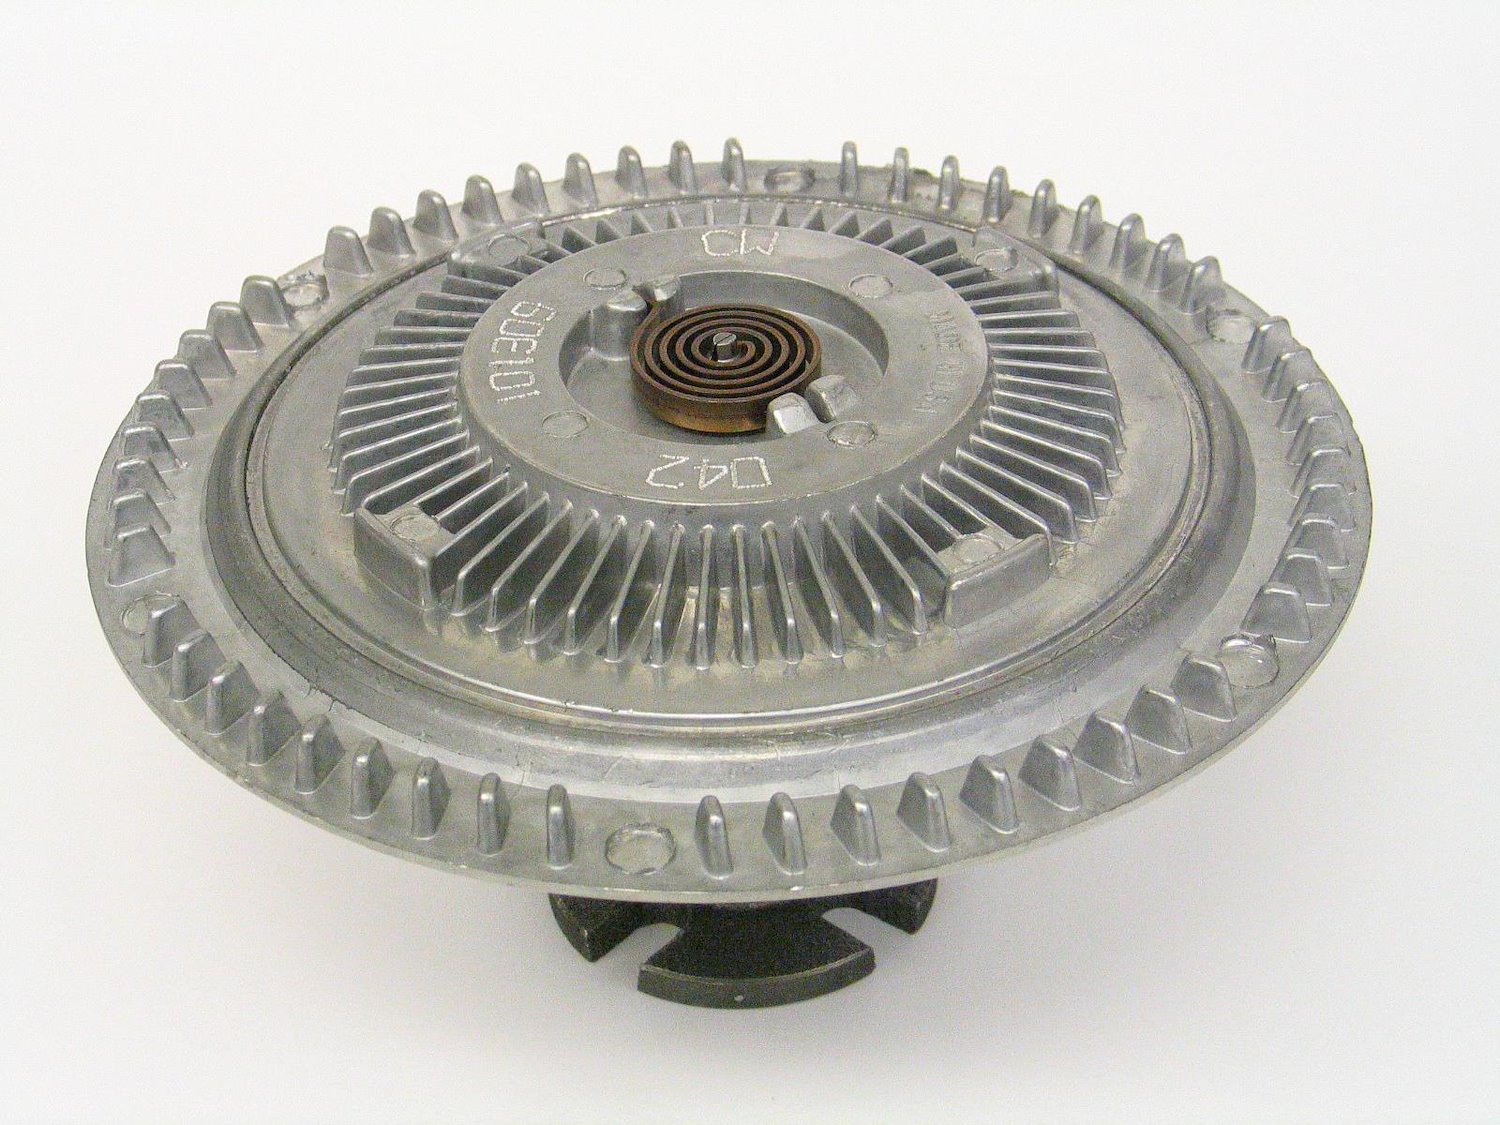 Standard Duty Thermal Fan Clutch for 1975-1985 GM